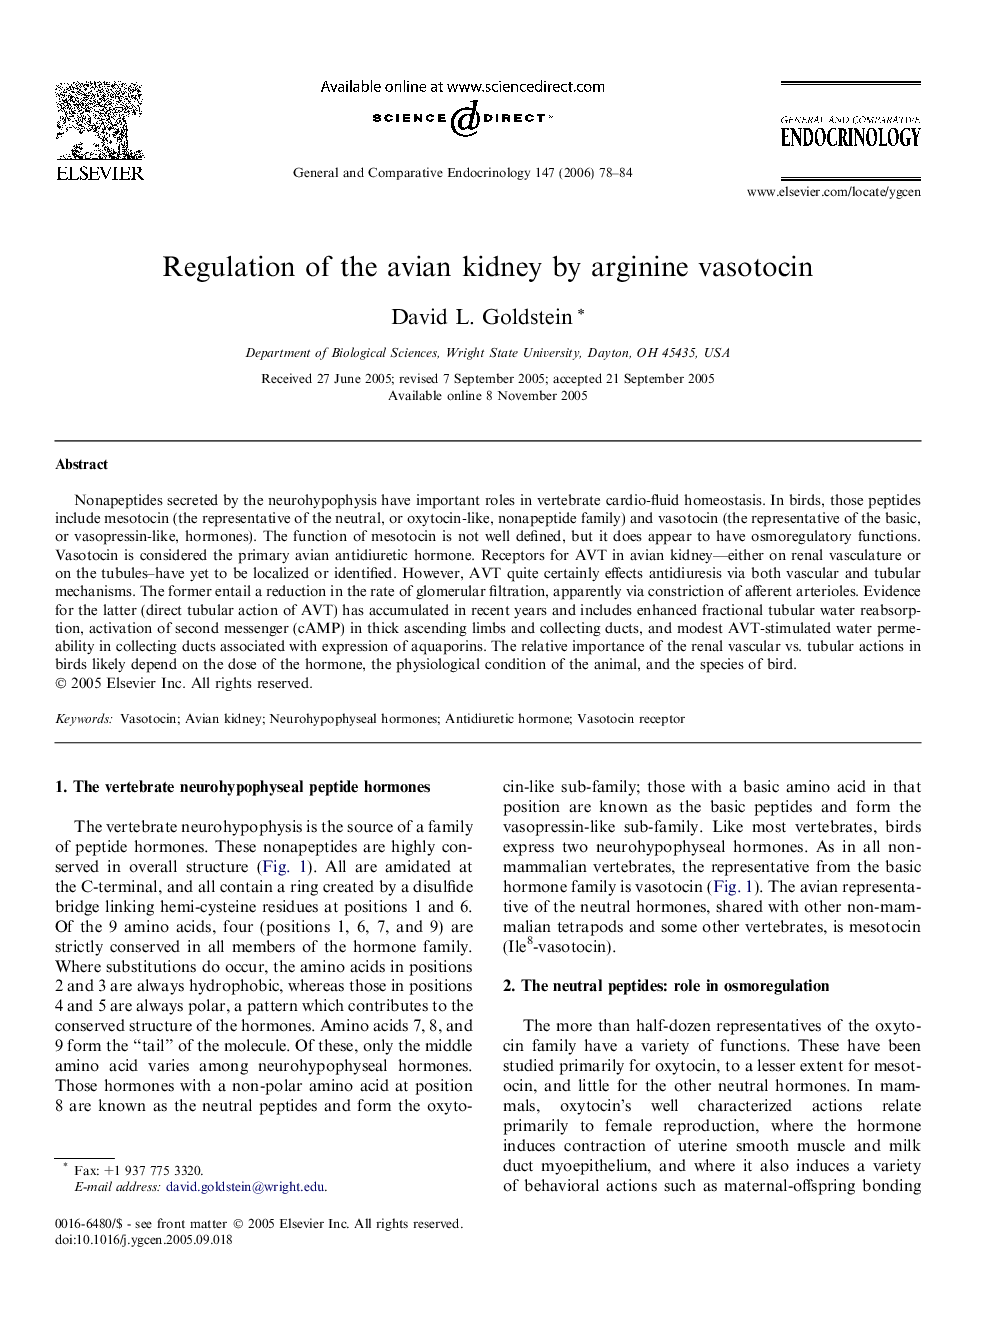 Regulation of the avian kidney by arginine vasotocin